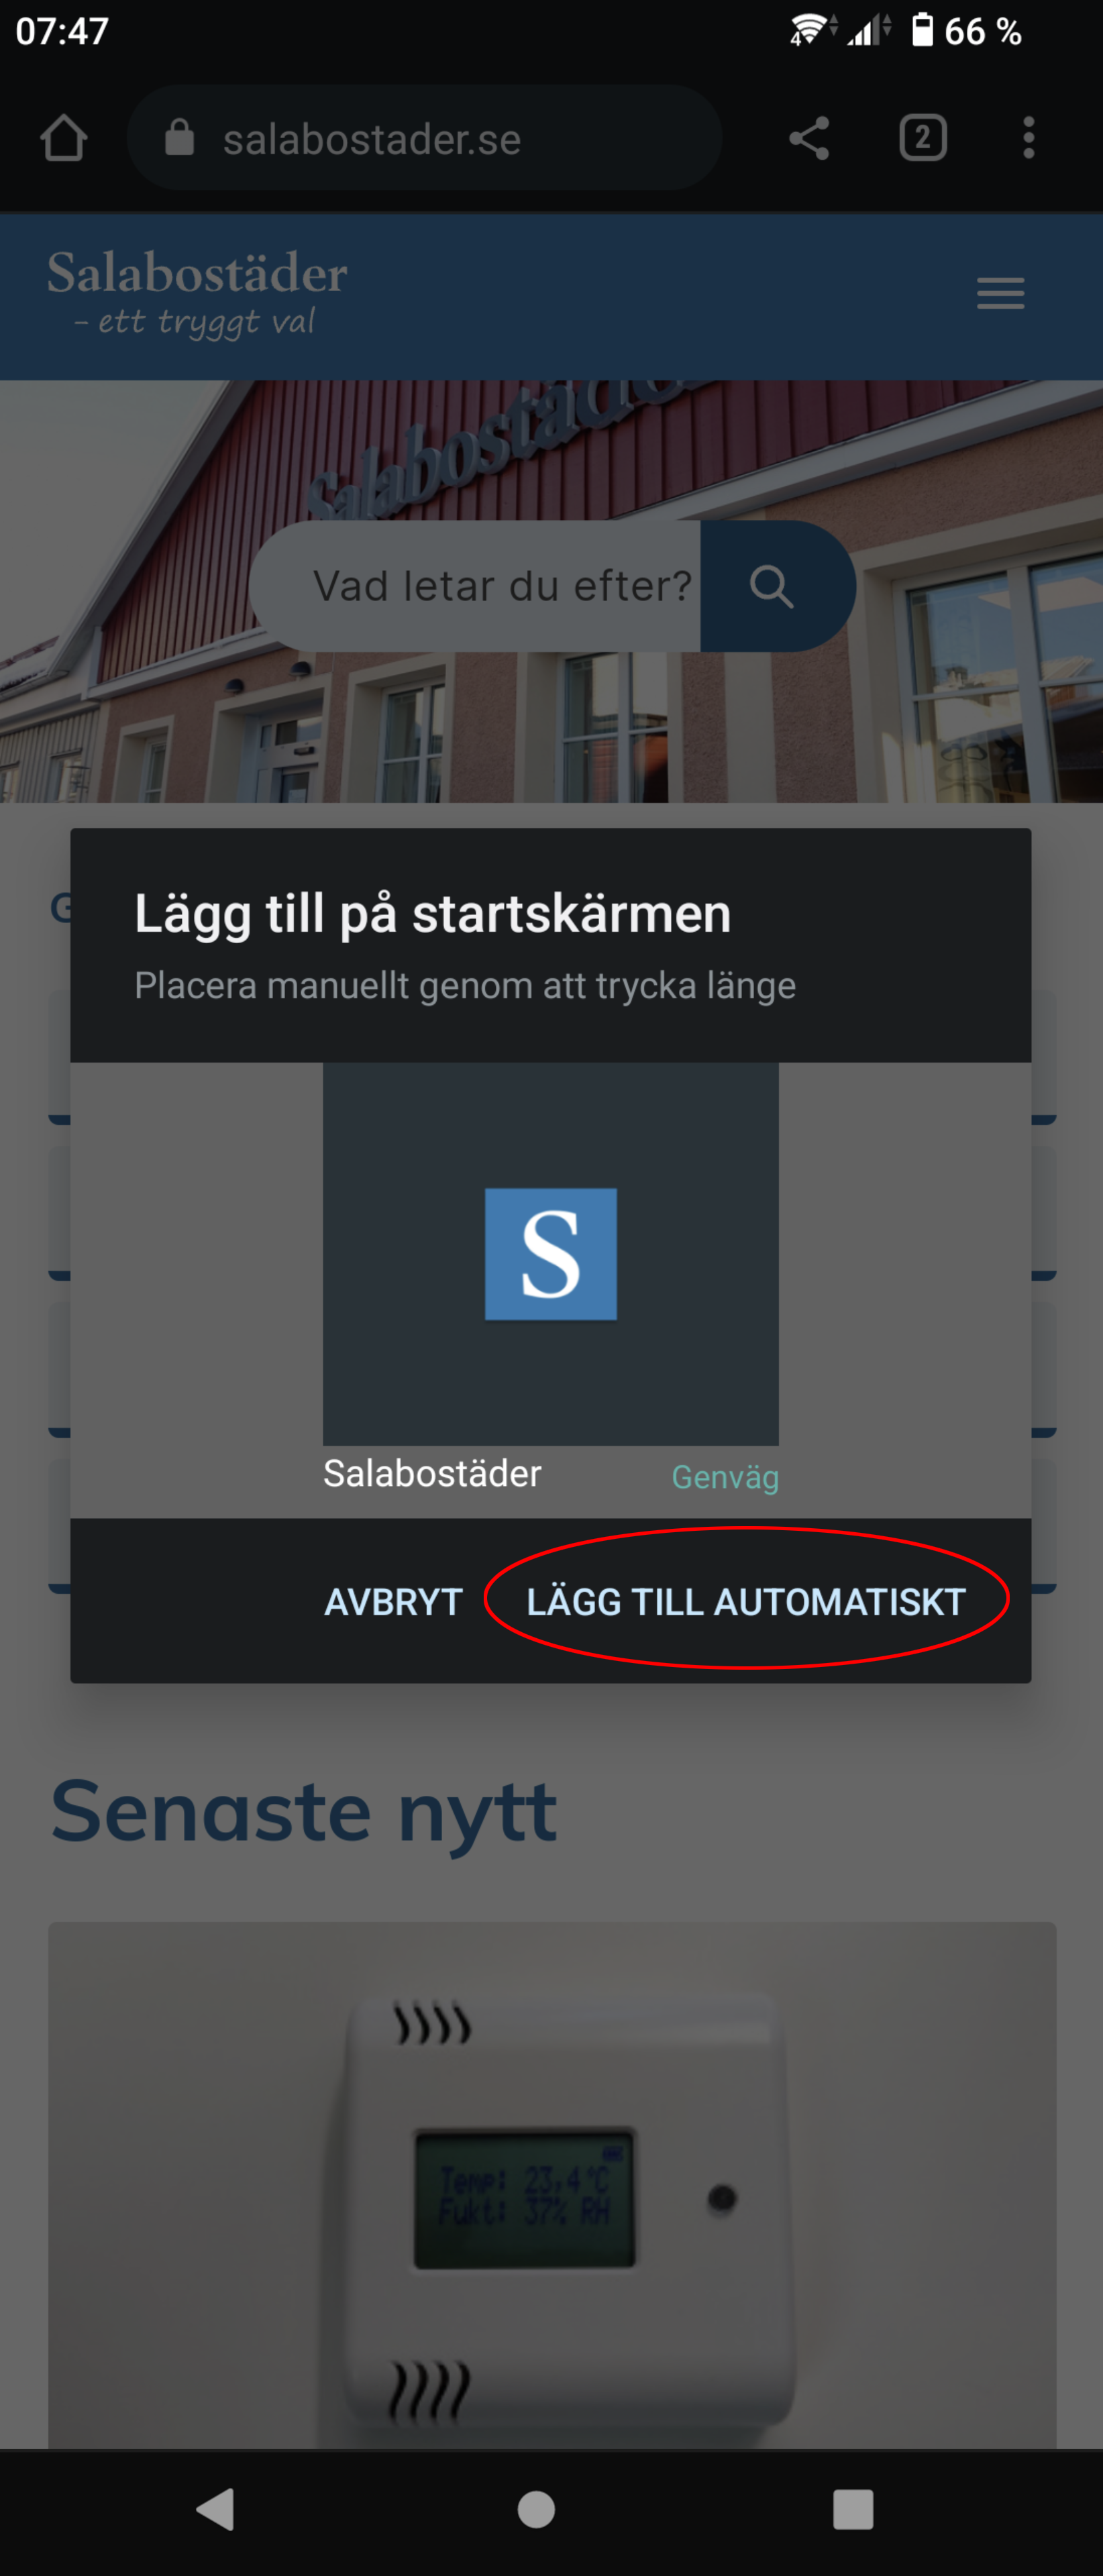 Skärmbild som instruerar att man ska trycka på knappen "lägg till automatiskt" i Chrome